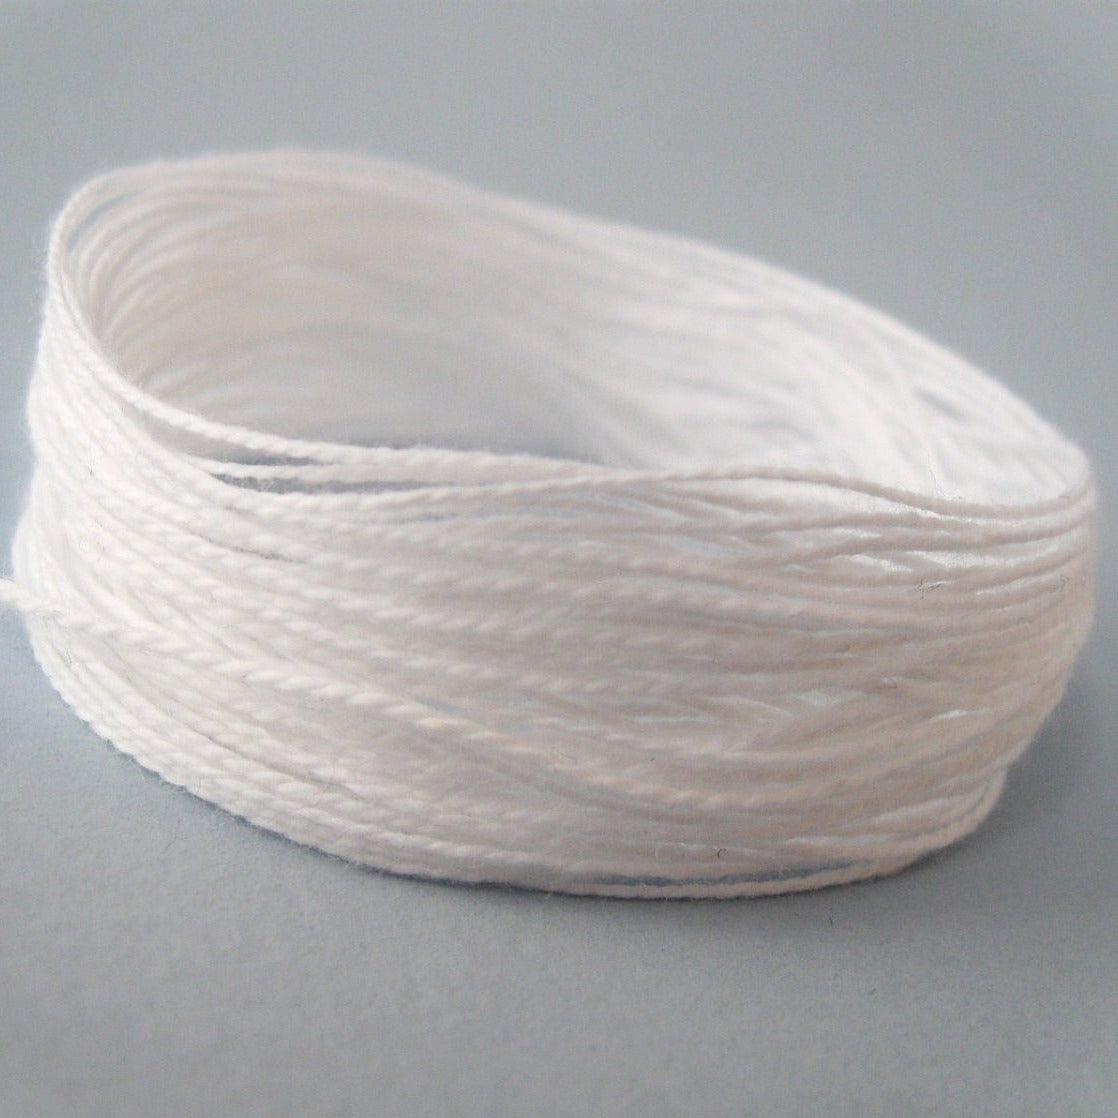 Corde de coton bio blanc 0.7mm - 10 mètres